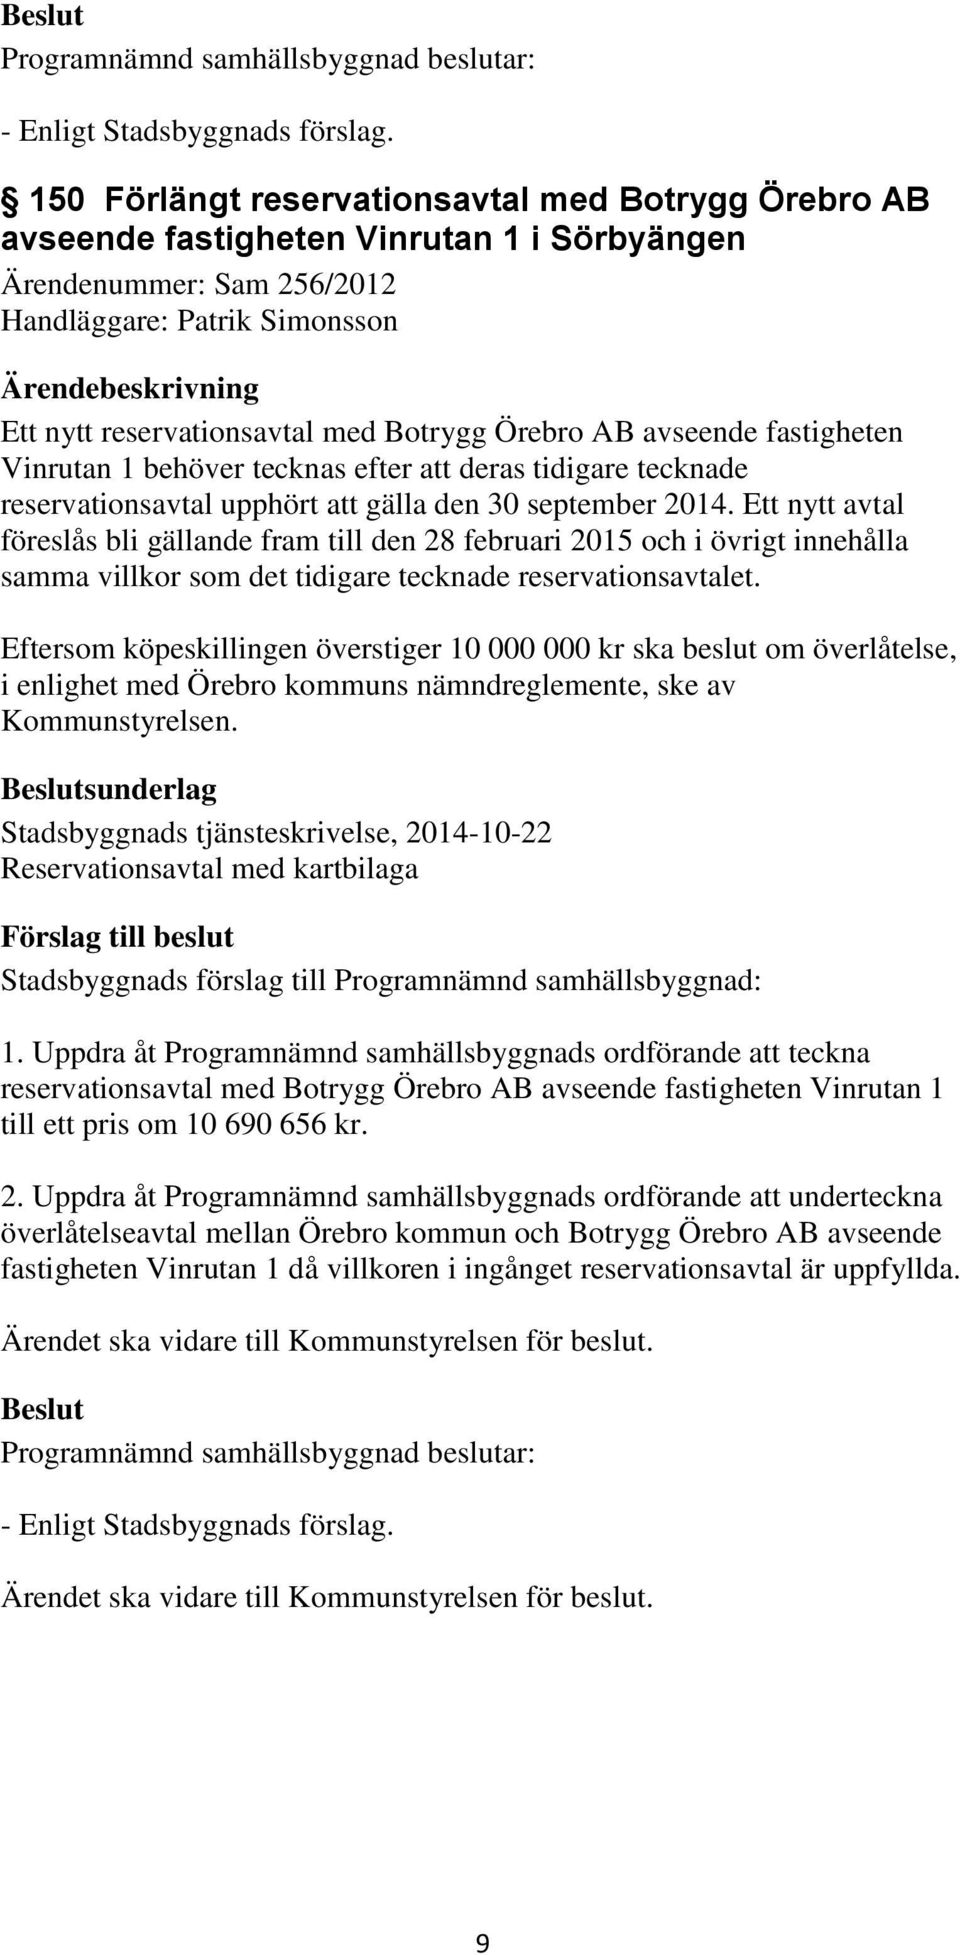 Örebro AB avseende fastigheten Vinrutan 1 behöver tecknas efter att deras tidigare tecknade reservationsavtal upphört att gälla den 30 september 2014.